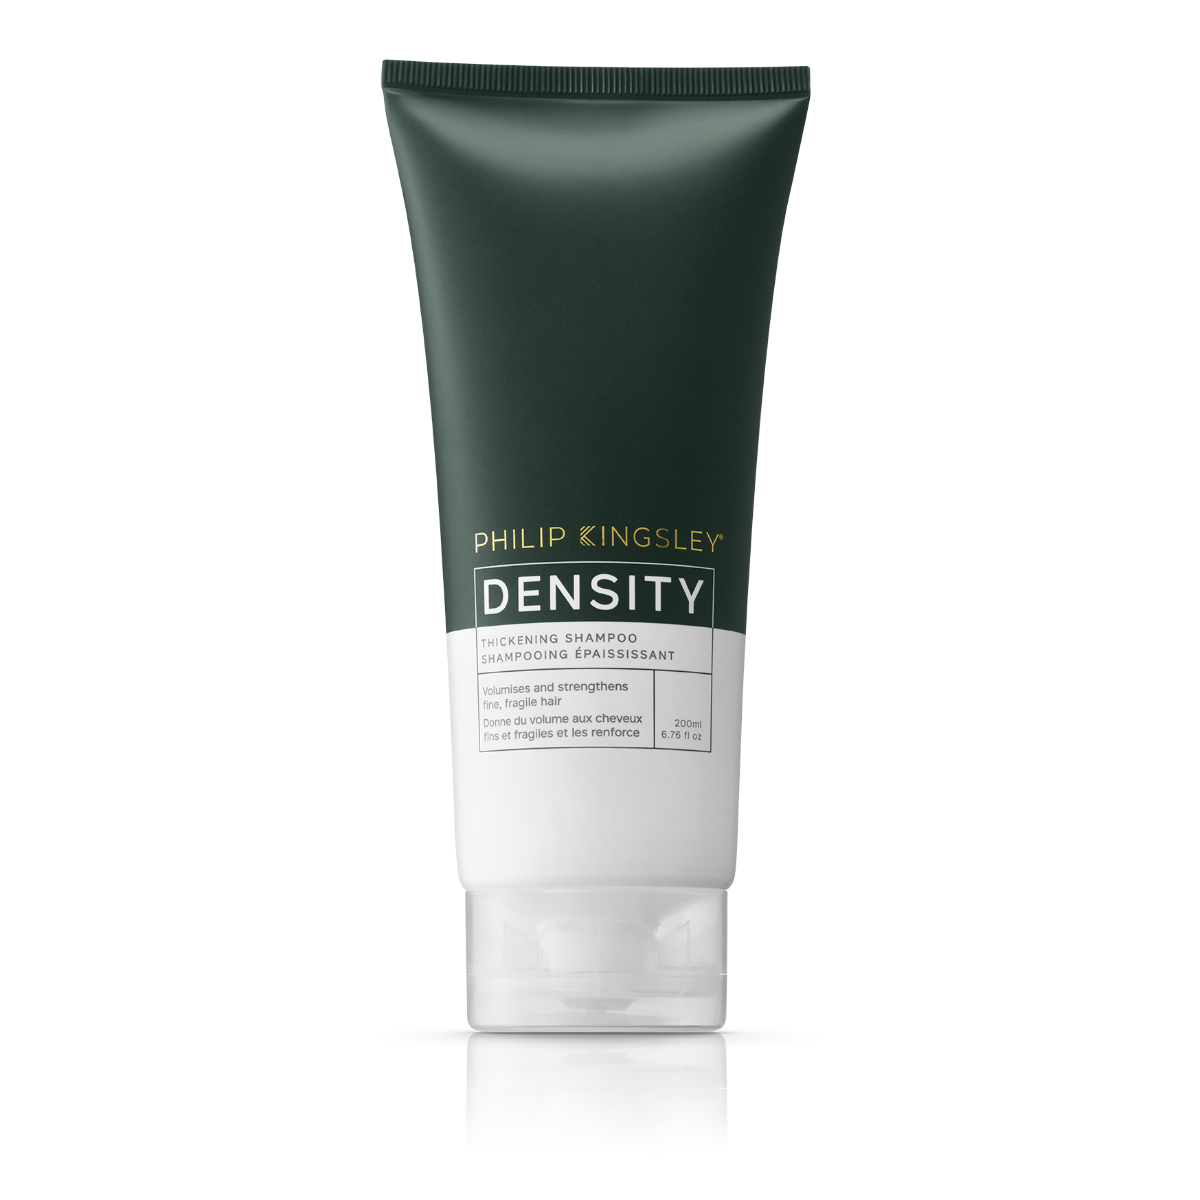 Density Thickening Shampoo 200ml